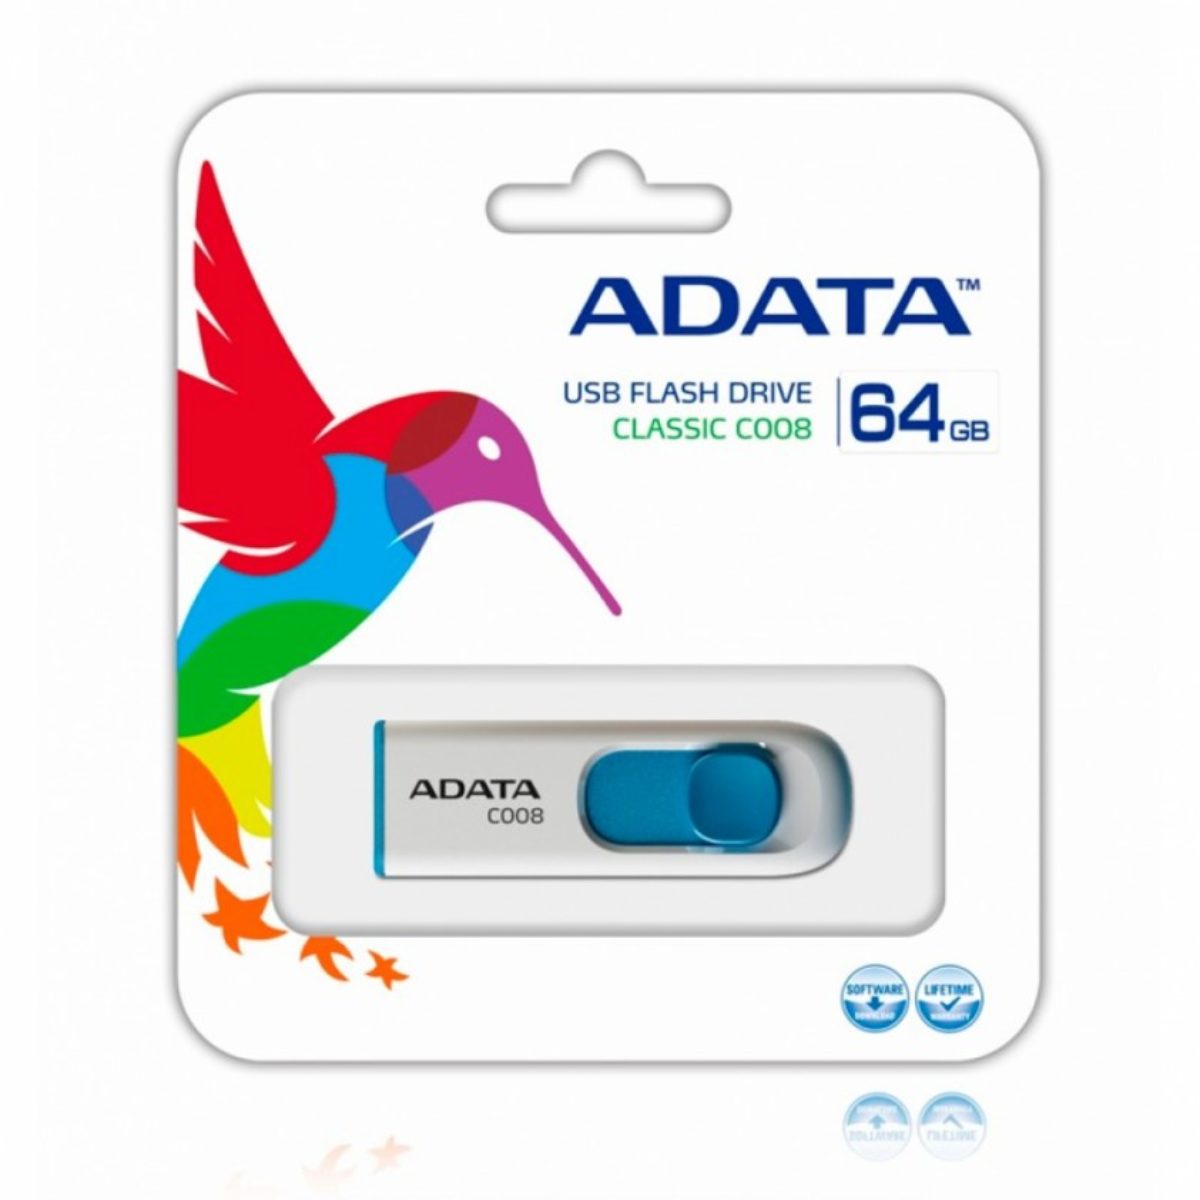 MEMORIA FLASH ADATA C008 64GB USB 2.0 BLANCO/AZUL RETRACTIL - ADATA